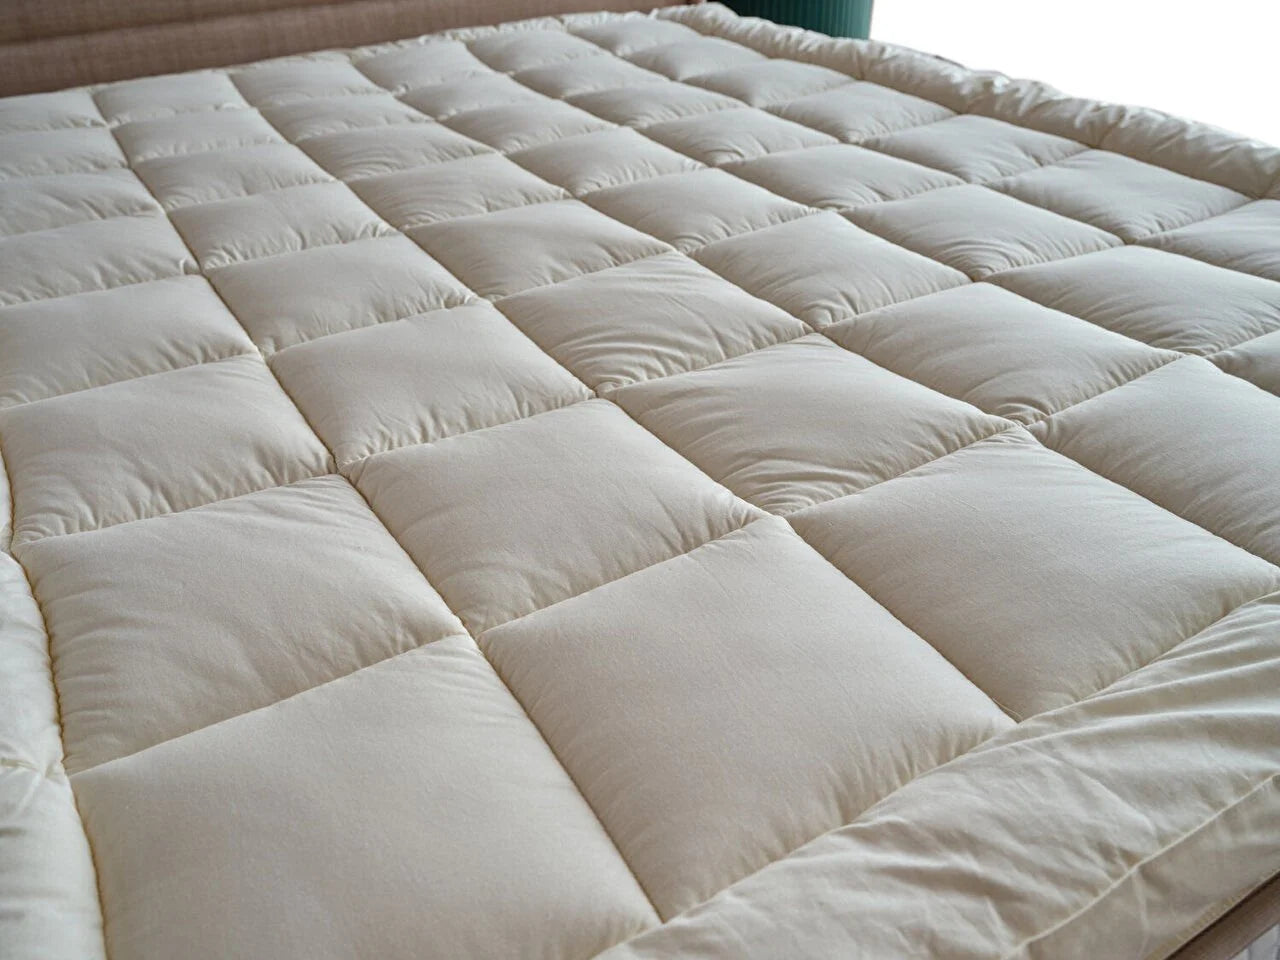 Wool topper mattress topper